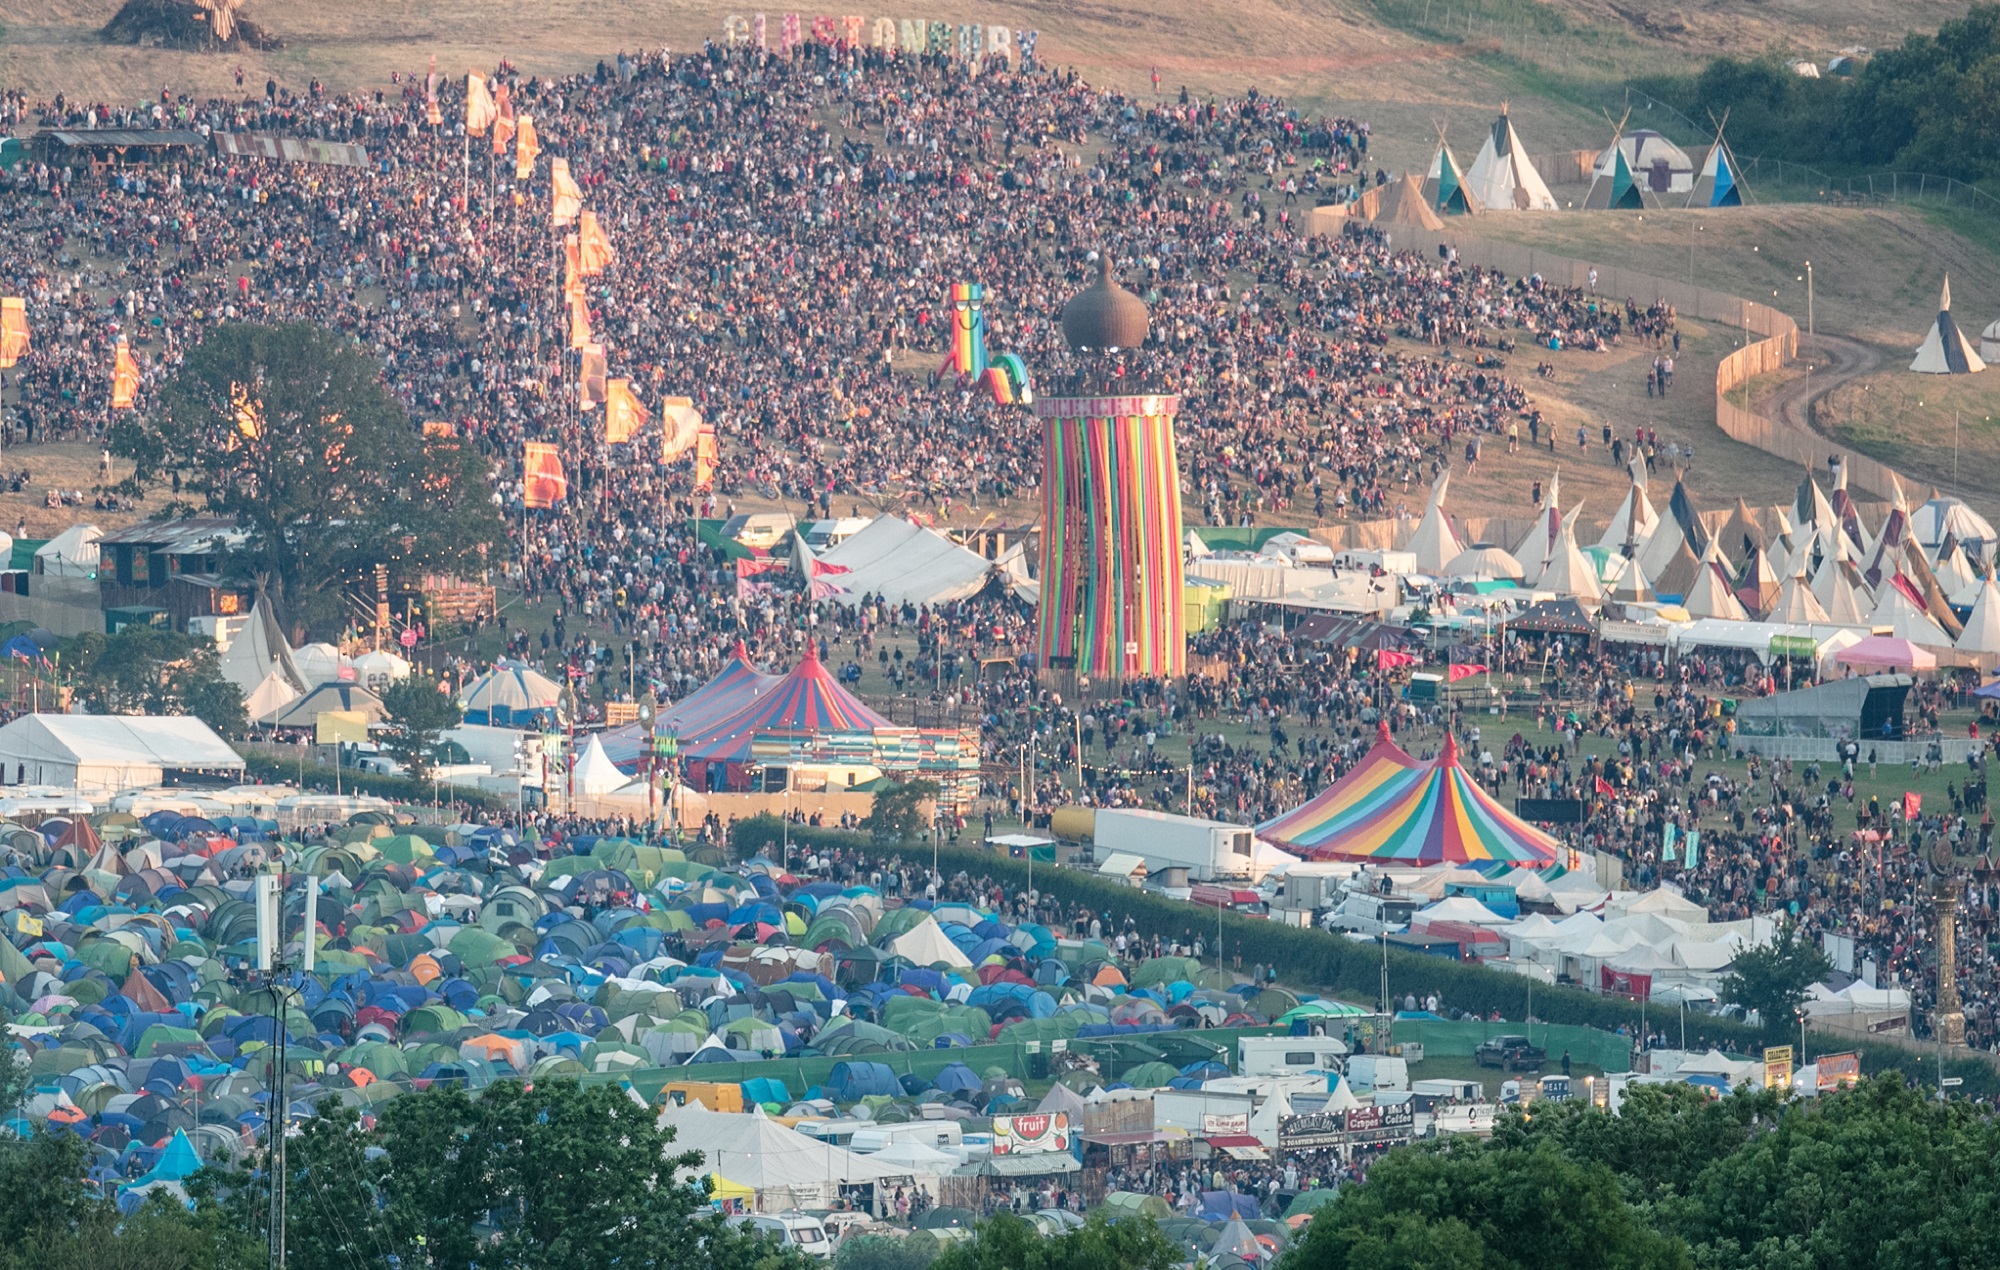 Emily Eavis von Glastonbury begrüßt das „inspirierende“ Festivalpublikum, da 99 Prozent der Zelte mit nach Hause genommen werden